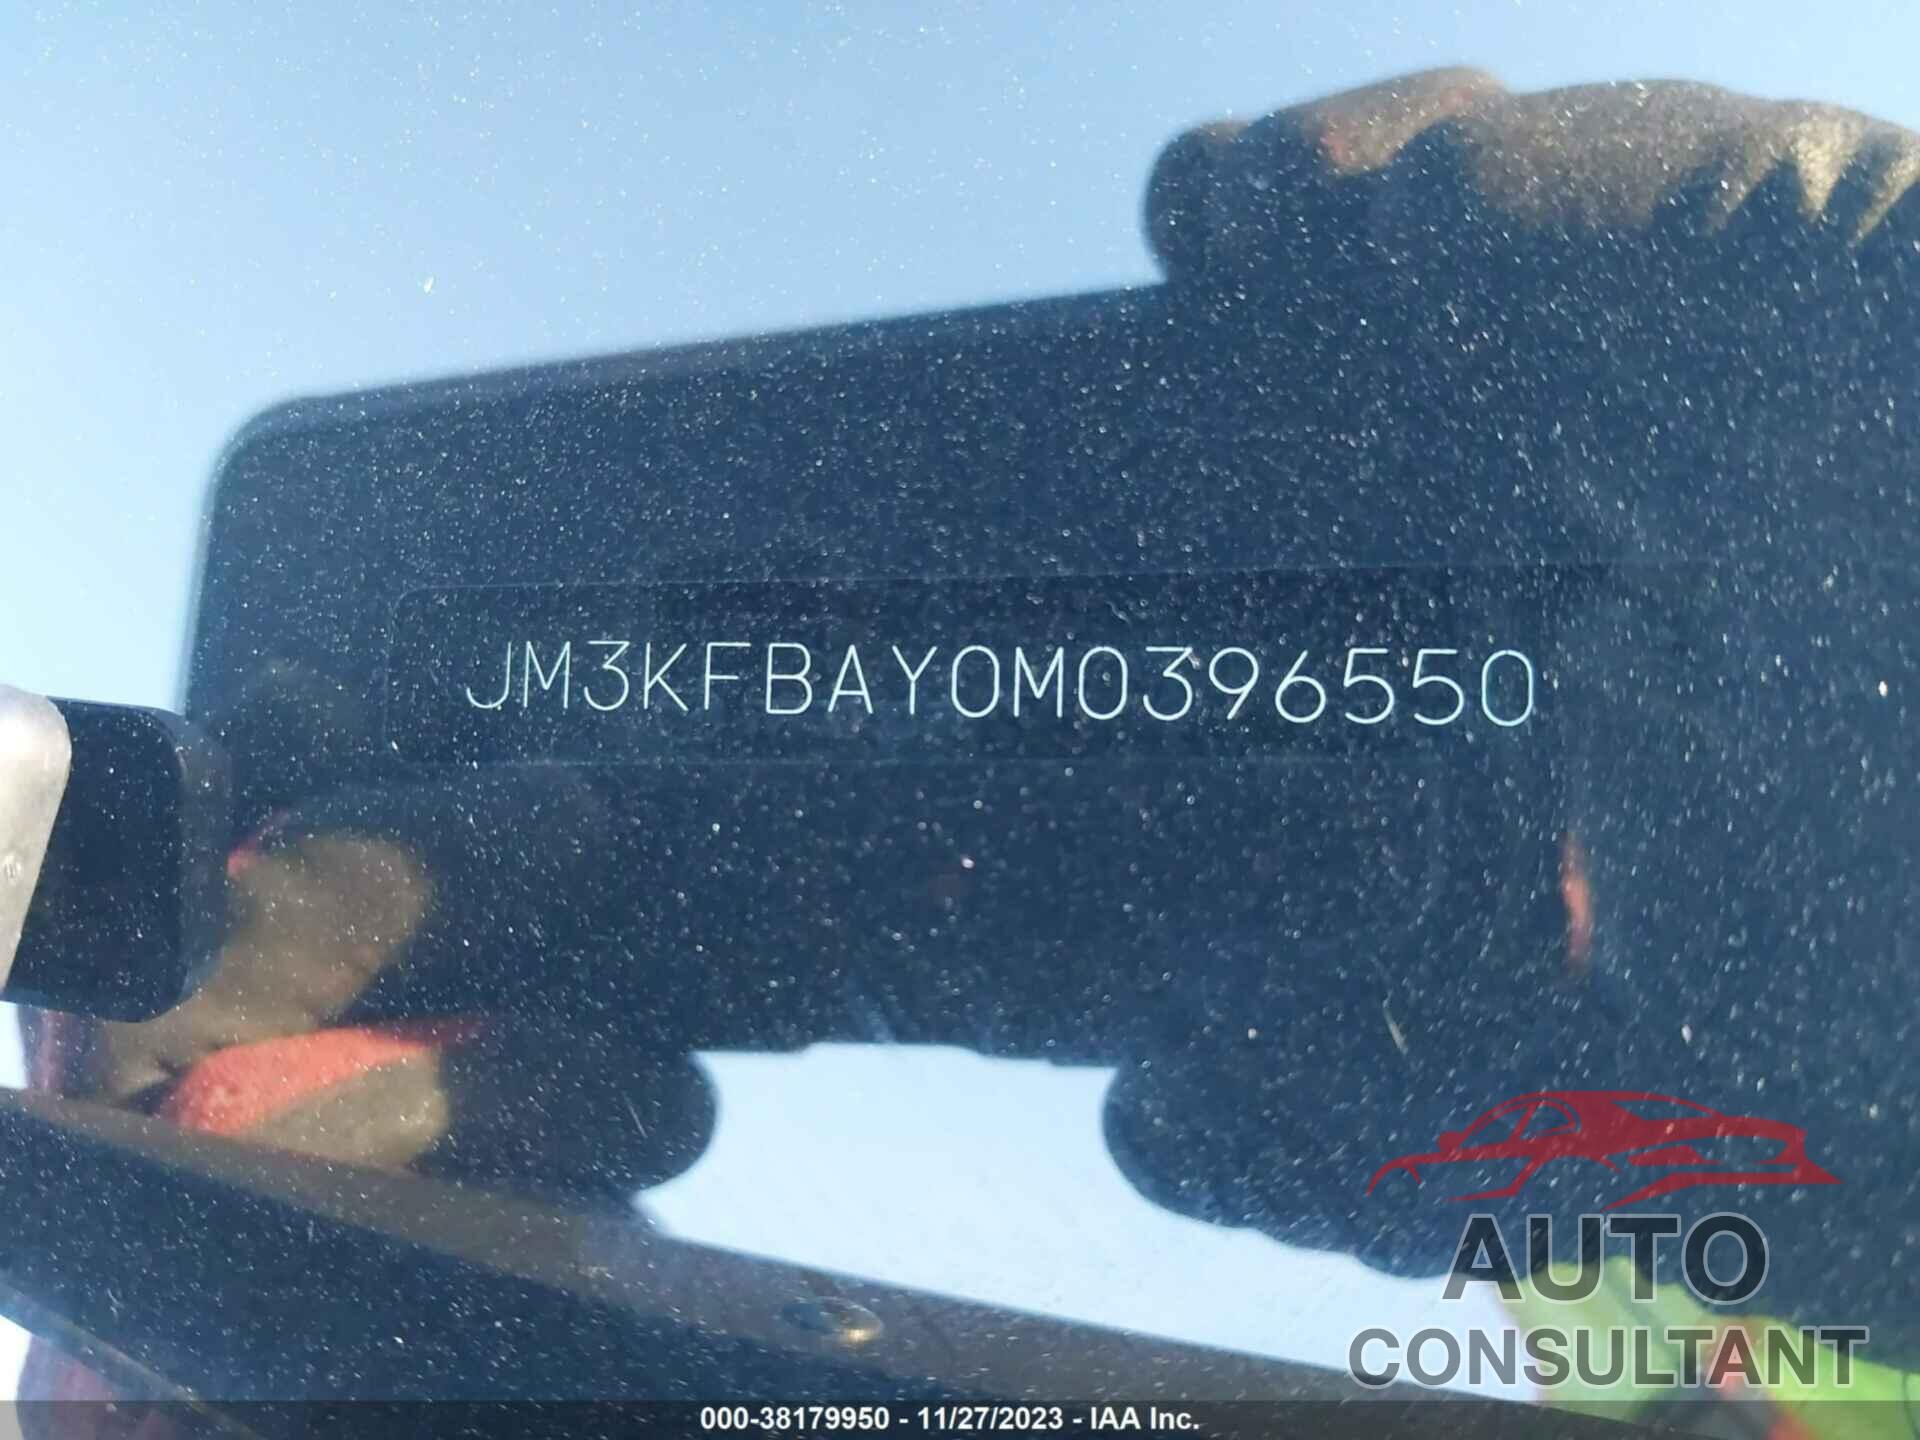 MAZDA CX-5 2021 - JM3KFBAY0M0396550